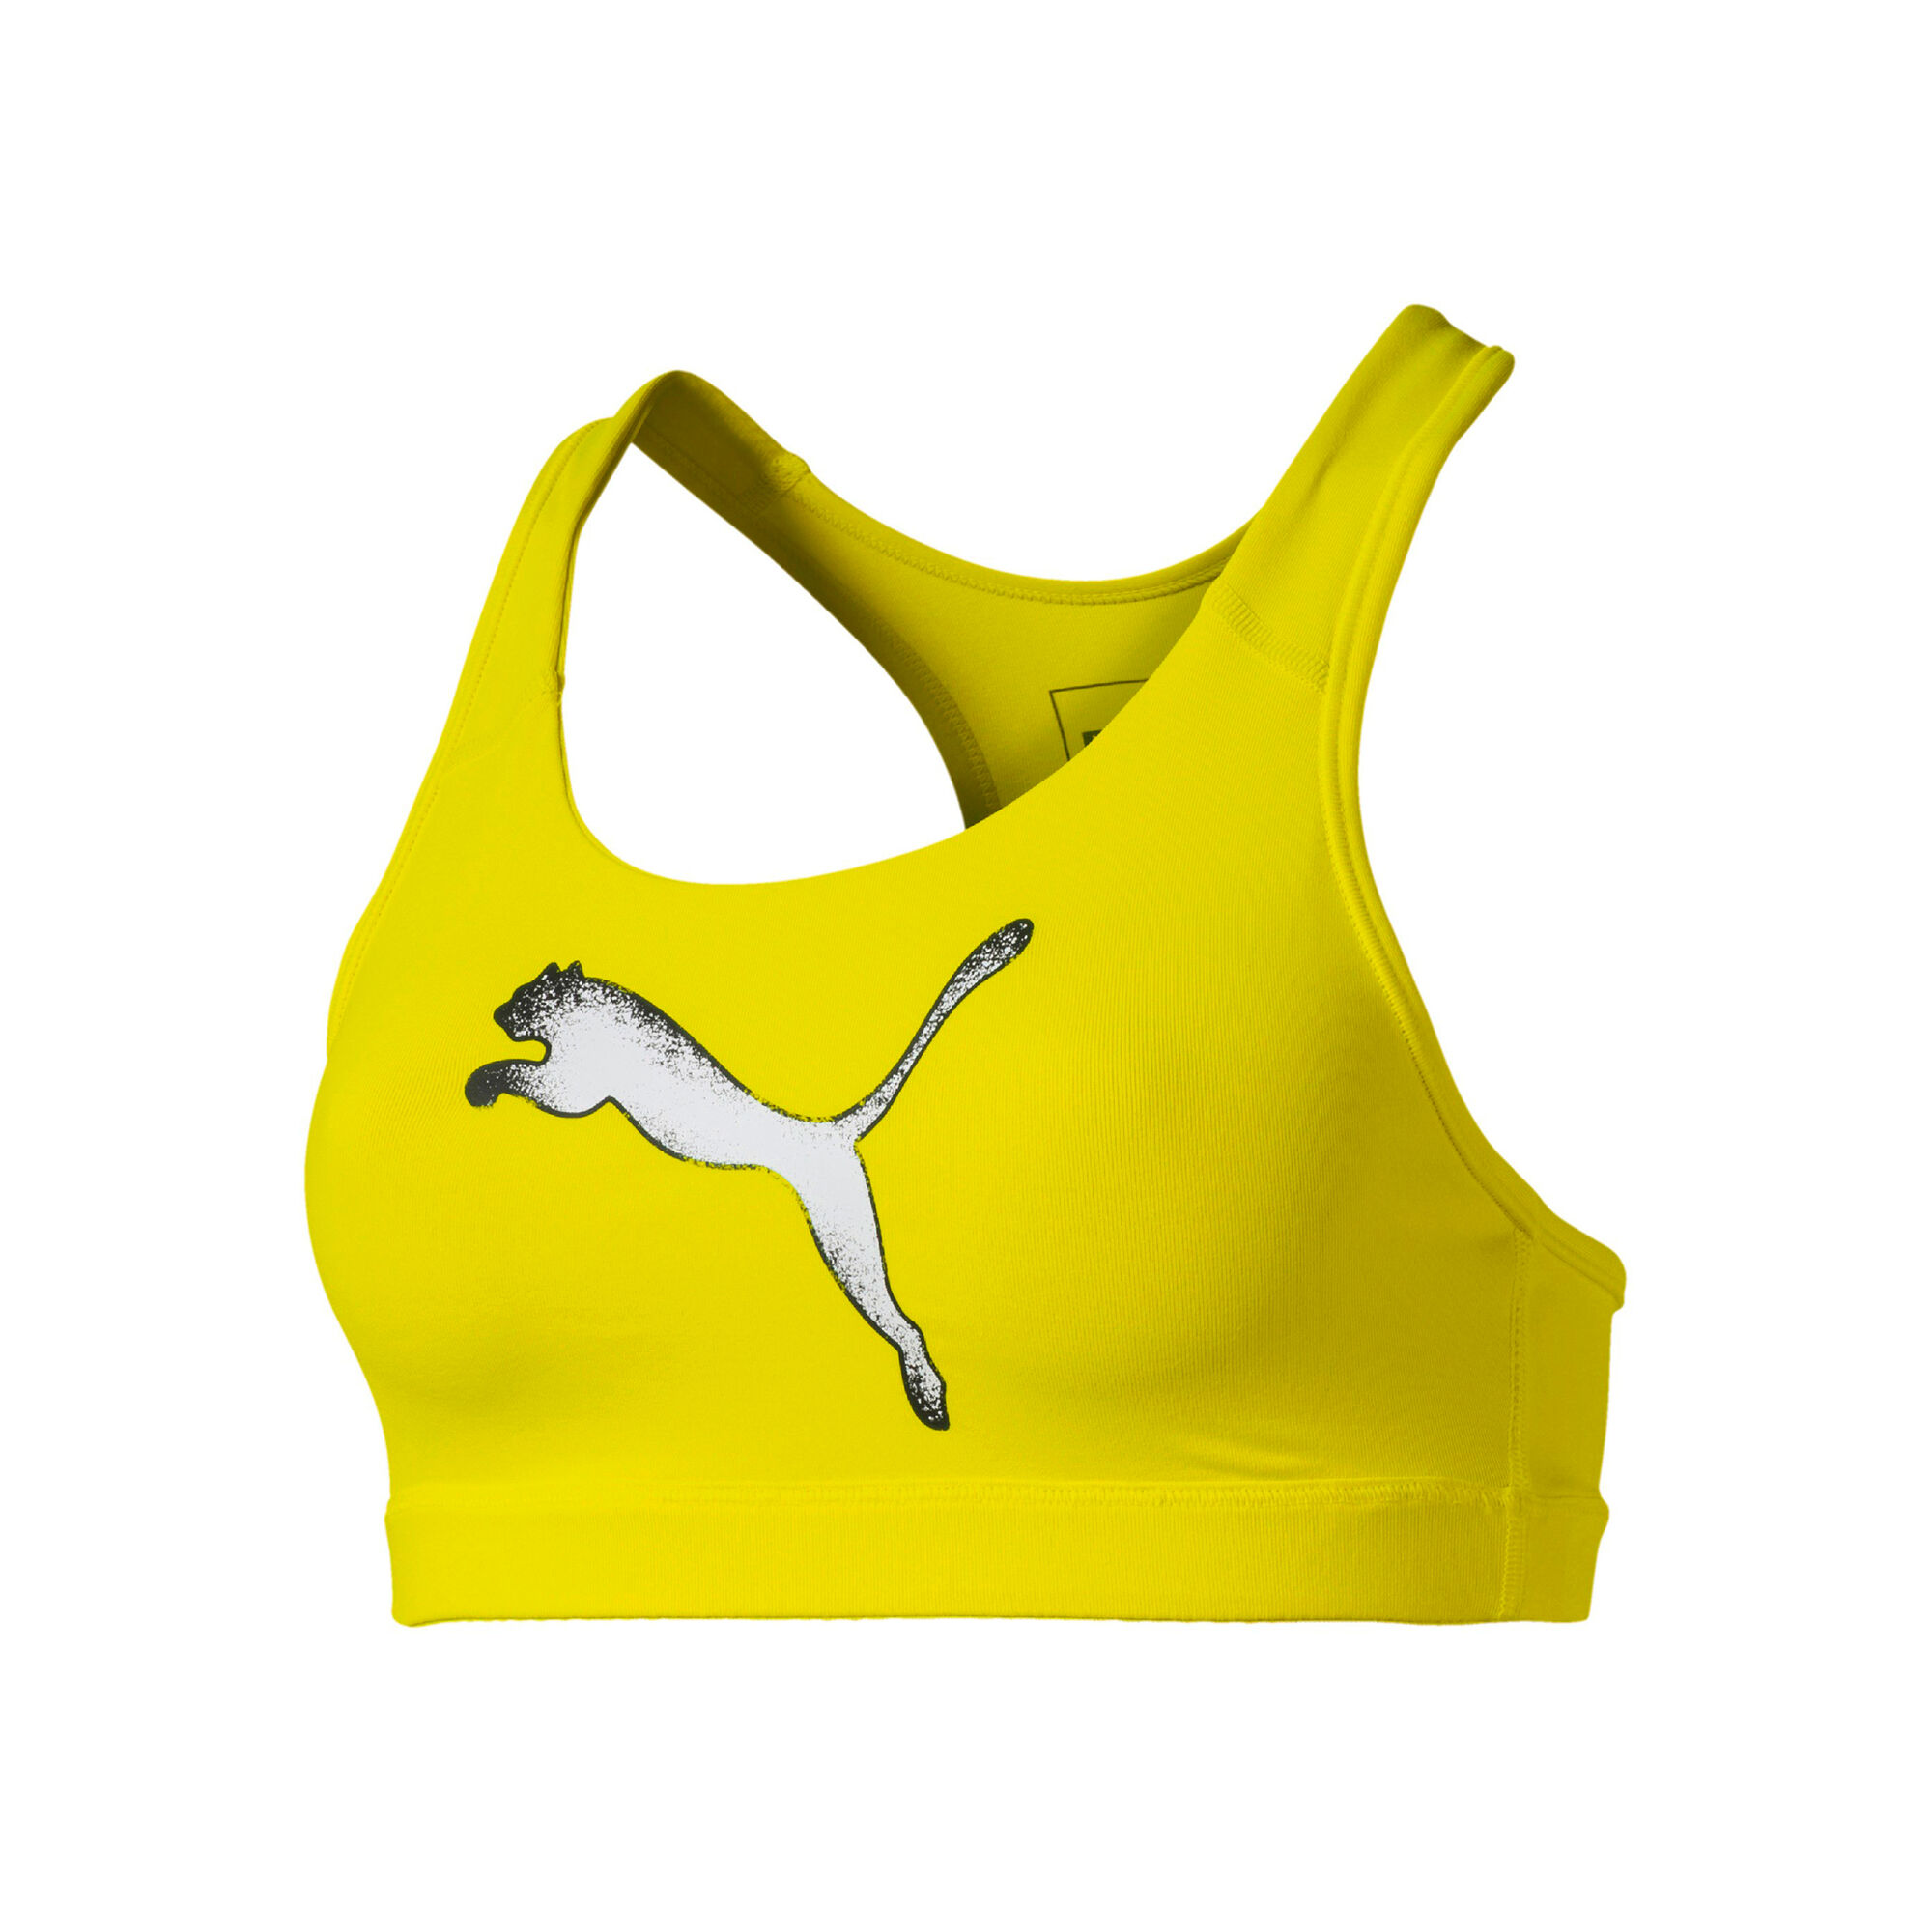 Buy Puma 4Keeps Sports Bras Women Yellow, Silver online